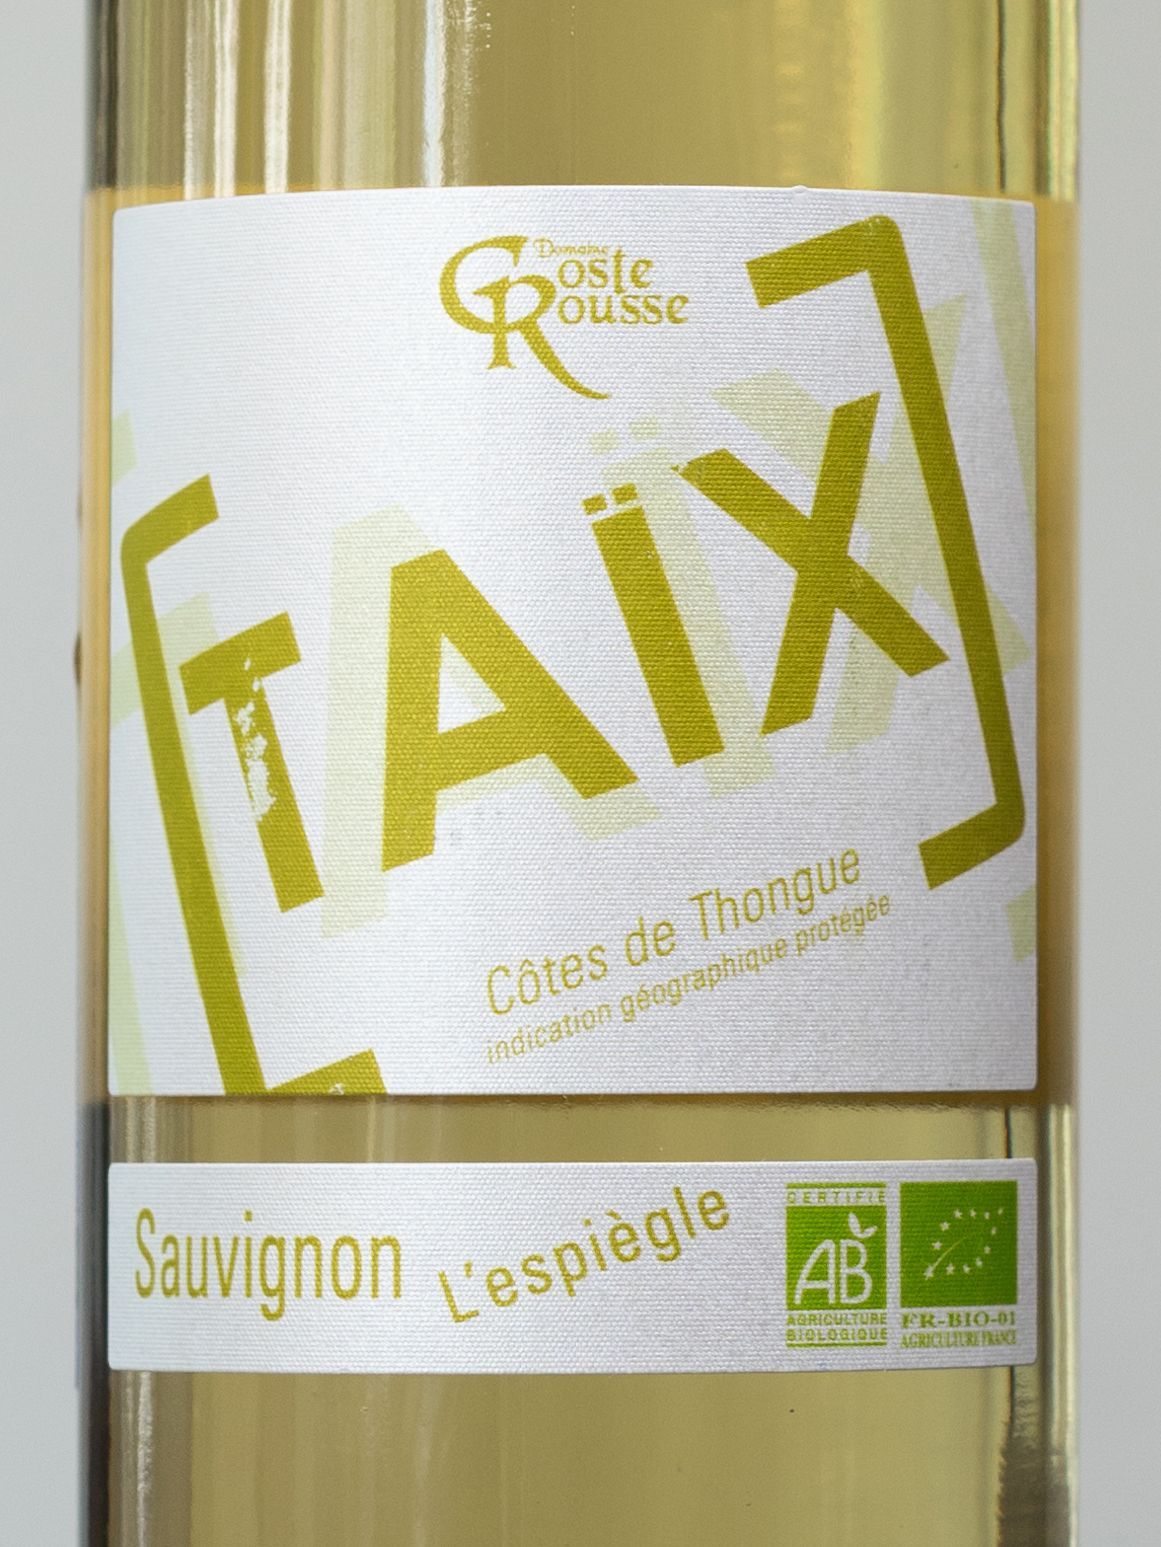 Вино Domaine Coste Rousse Taix Sauvignon Cotes de Thongue / Таис Совиньон Кот де Тонг